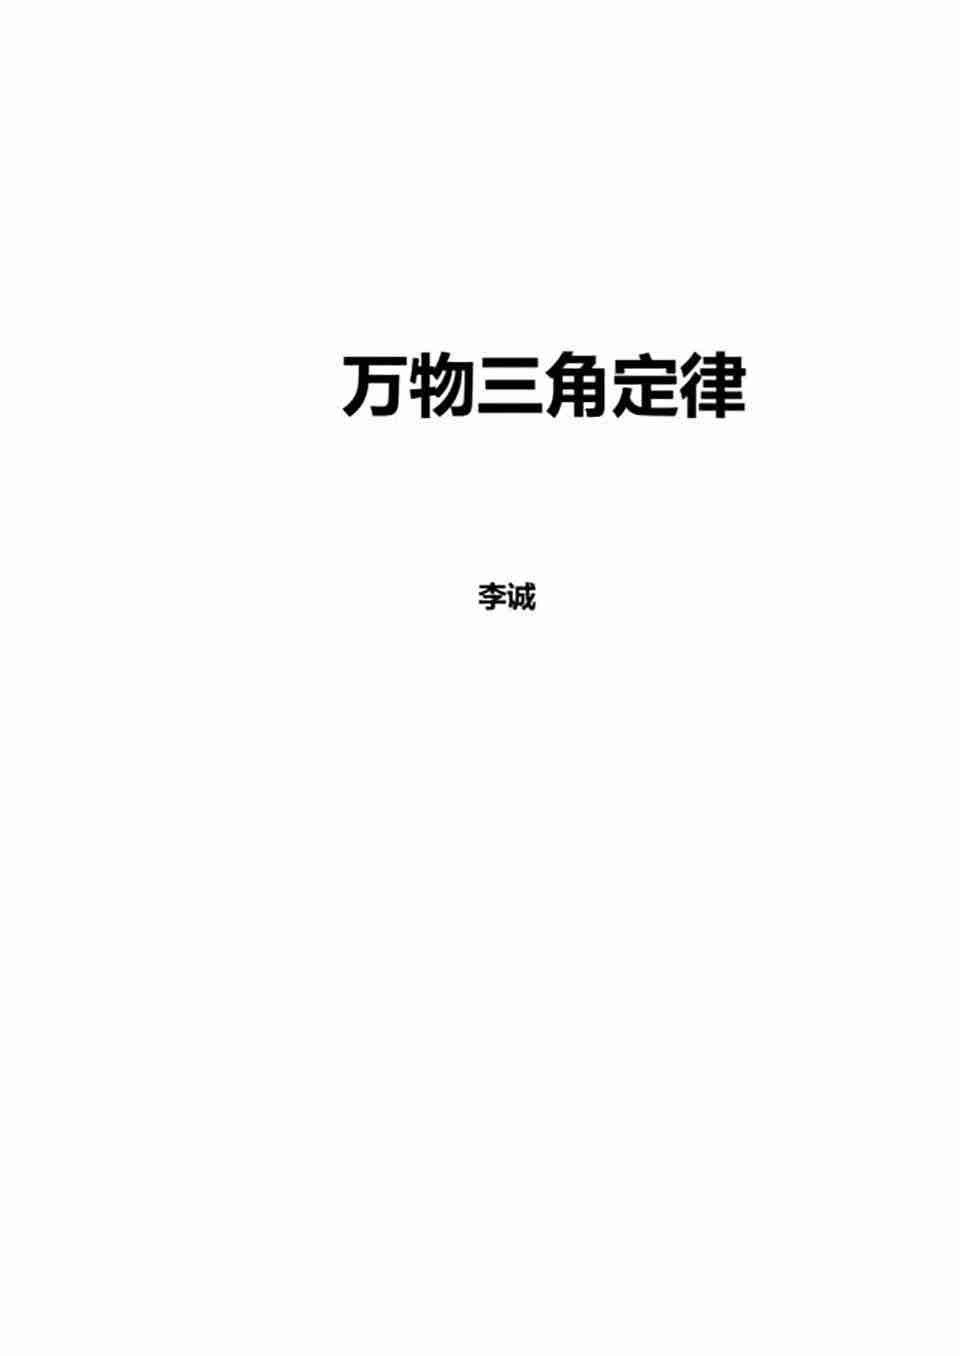 蘇方行萬事三角定律面授班整理版30頁.pdf